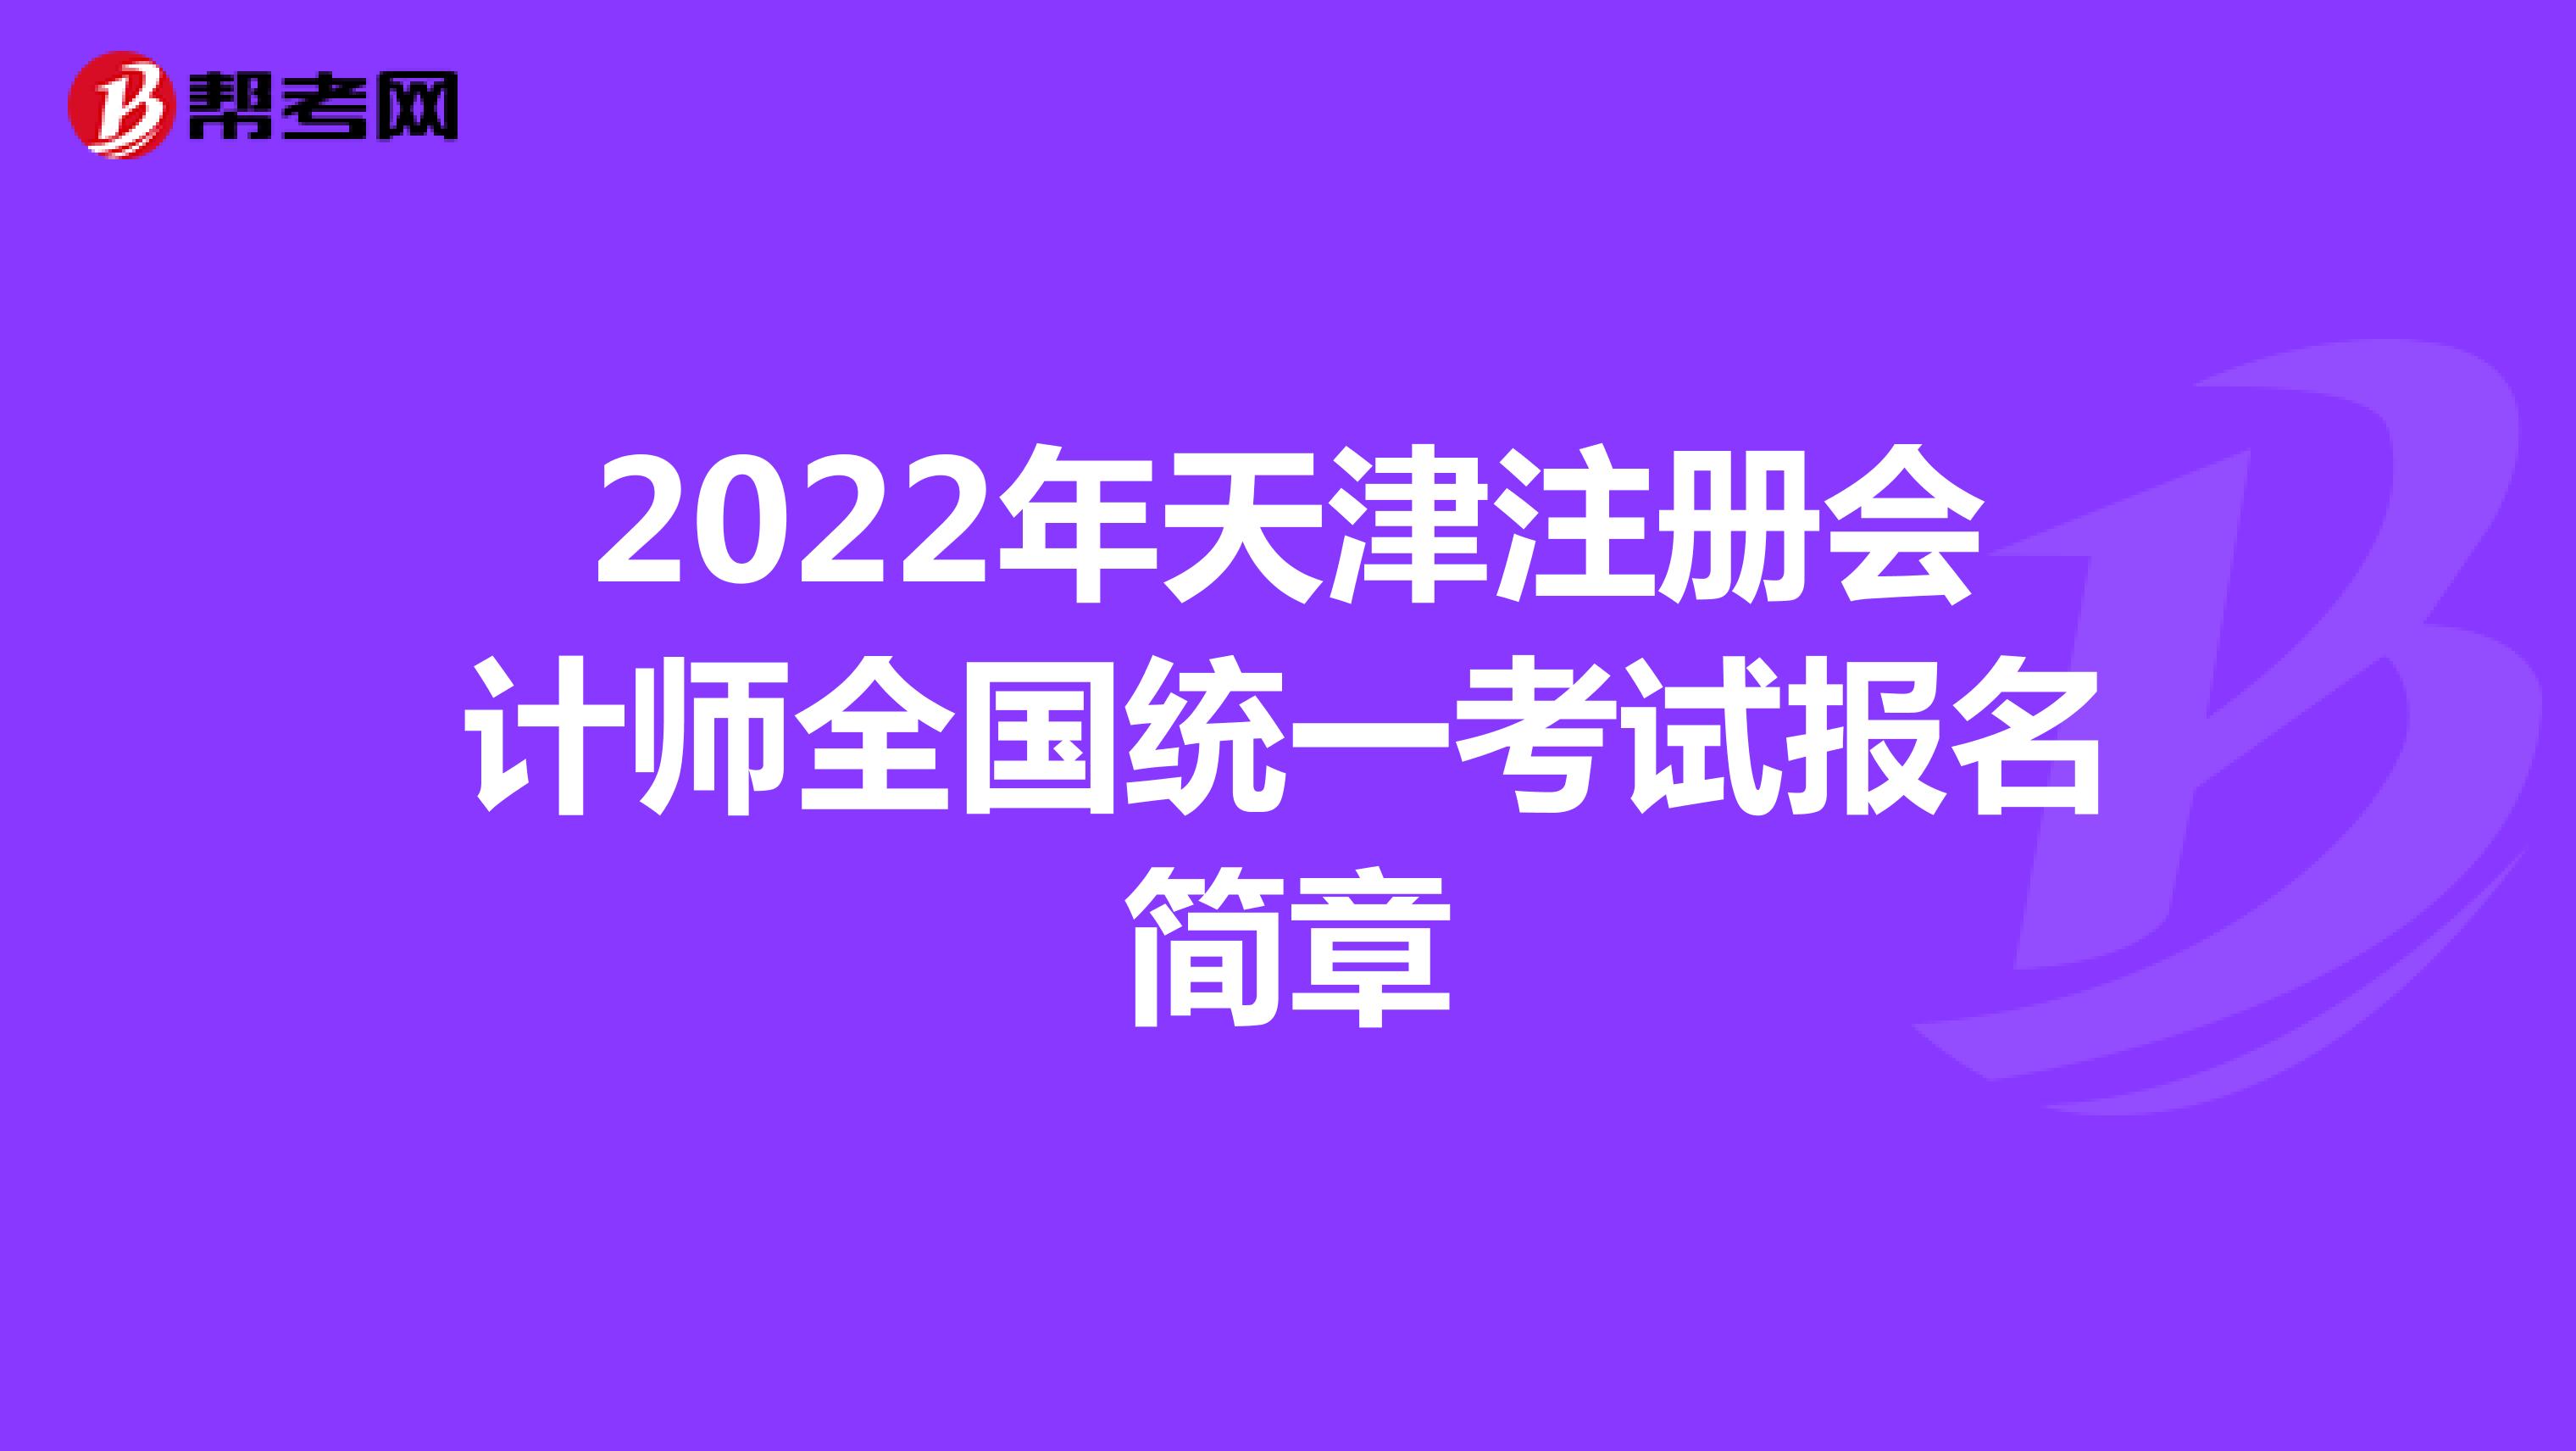 2022年天津注冊會計師全國統一考試報名簡章